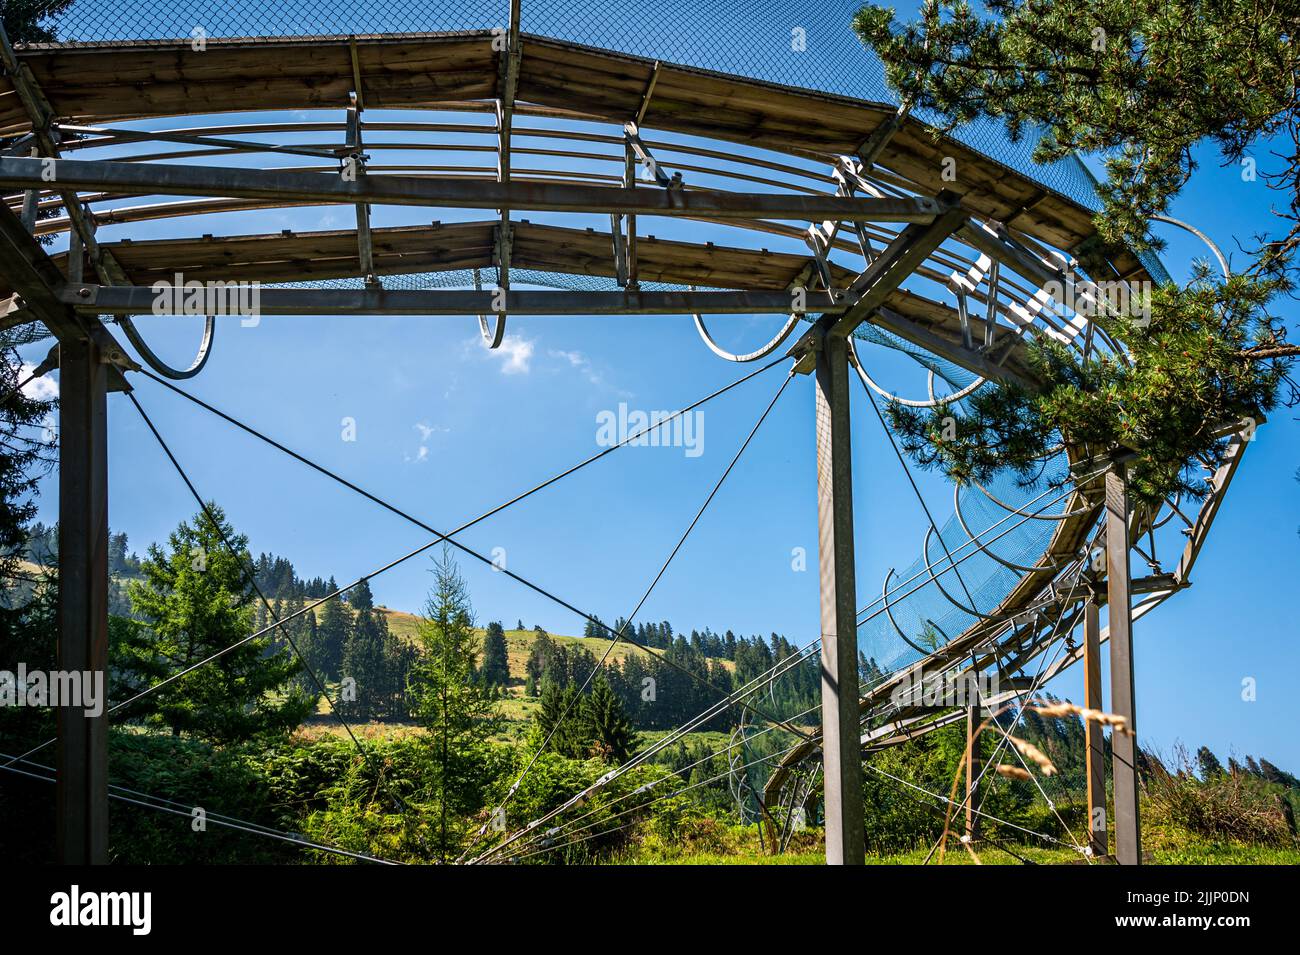 Sommerrodeln in der Schweiz. Run Strobl aus Edelstahl. Vergnügungspark und Attraktionen. Stockfoto